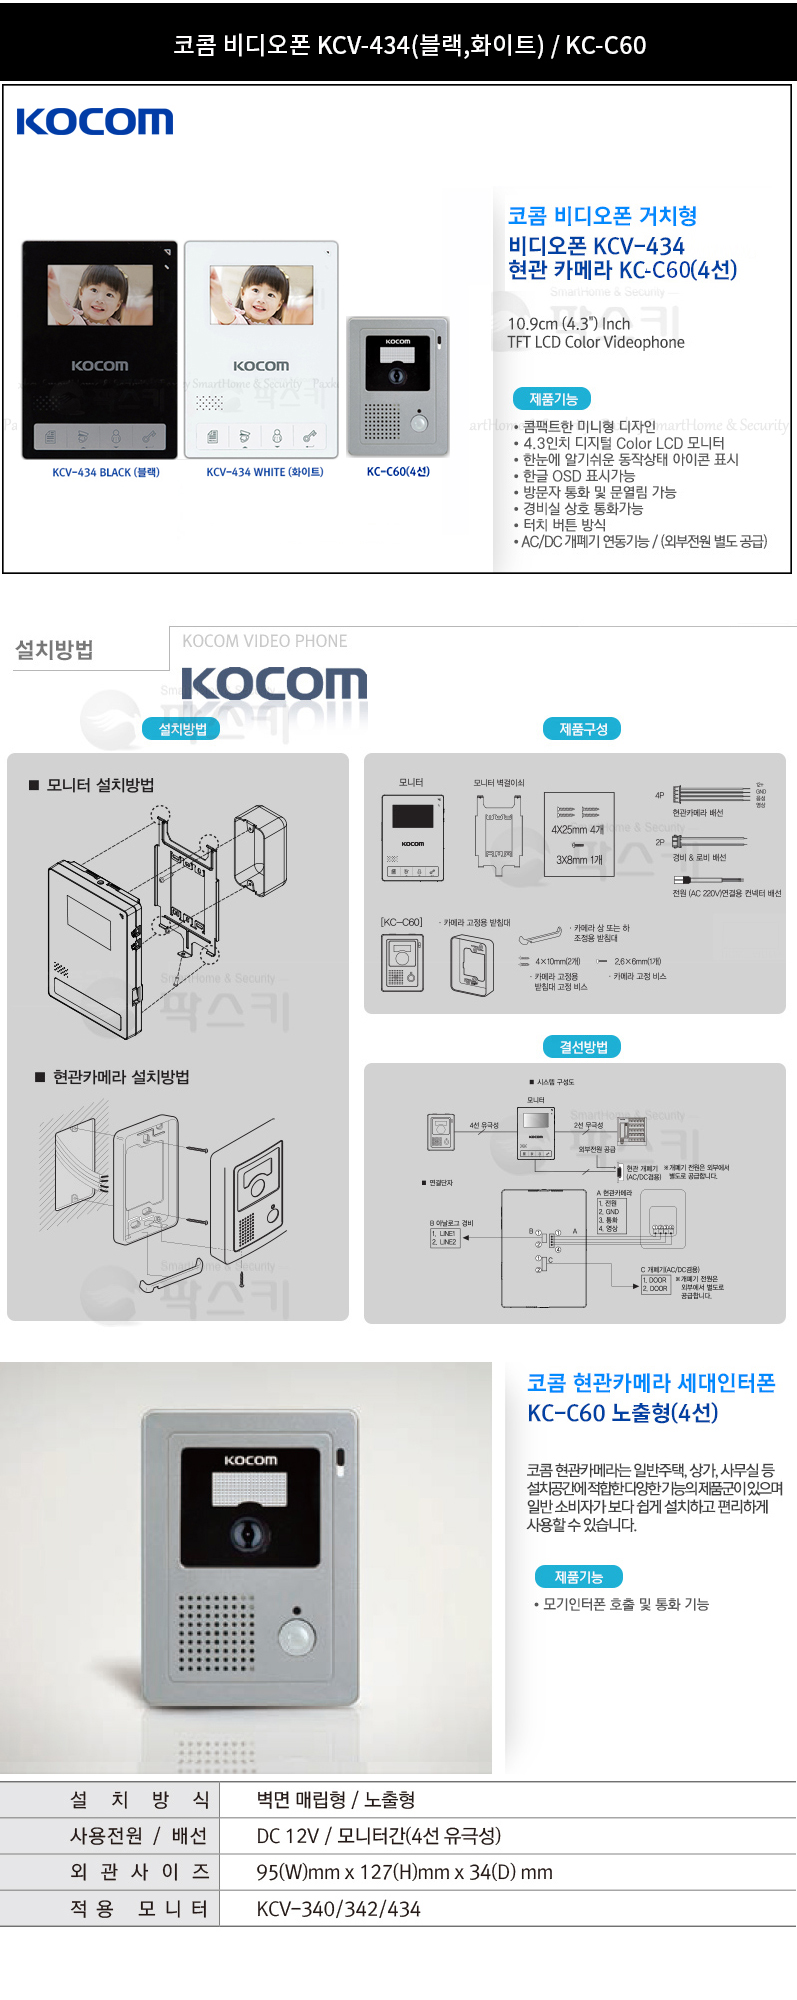 kocom_kcv-434_kc-c60cam_detail_145504.jpg